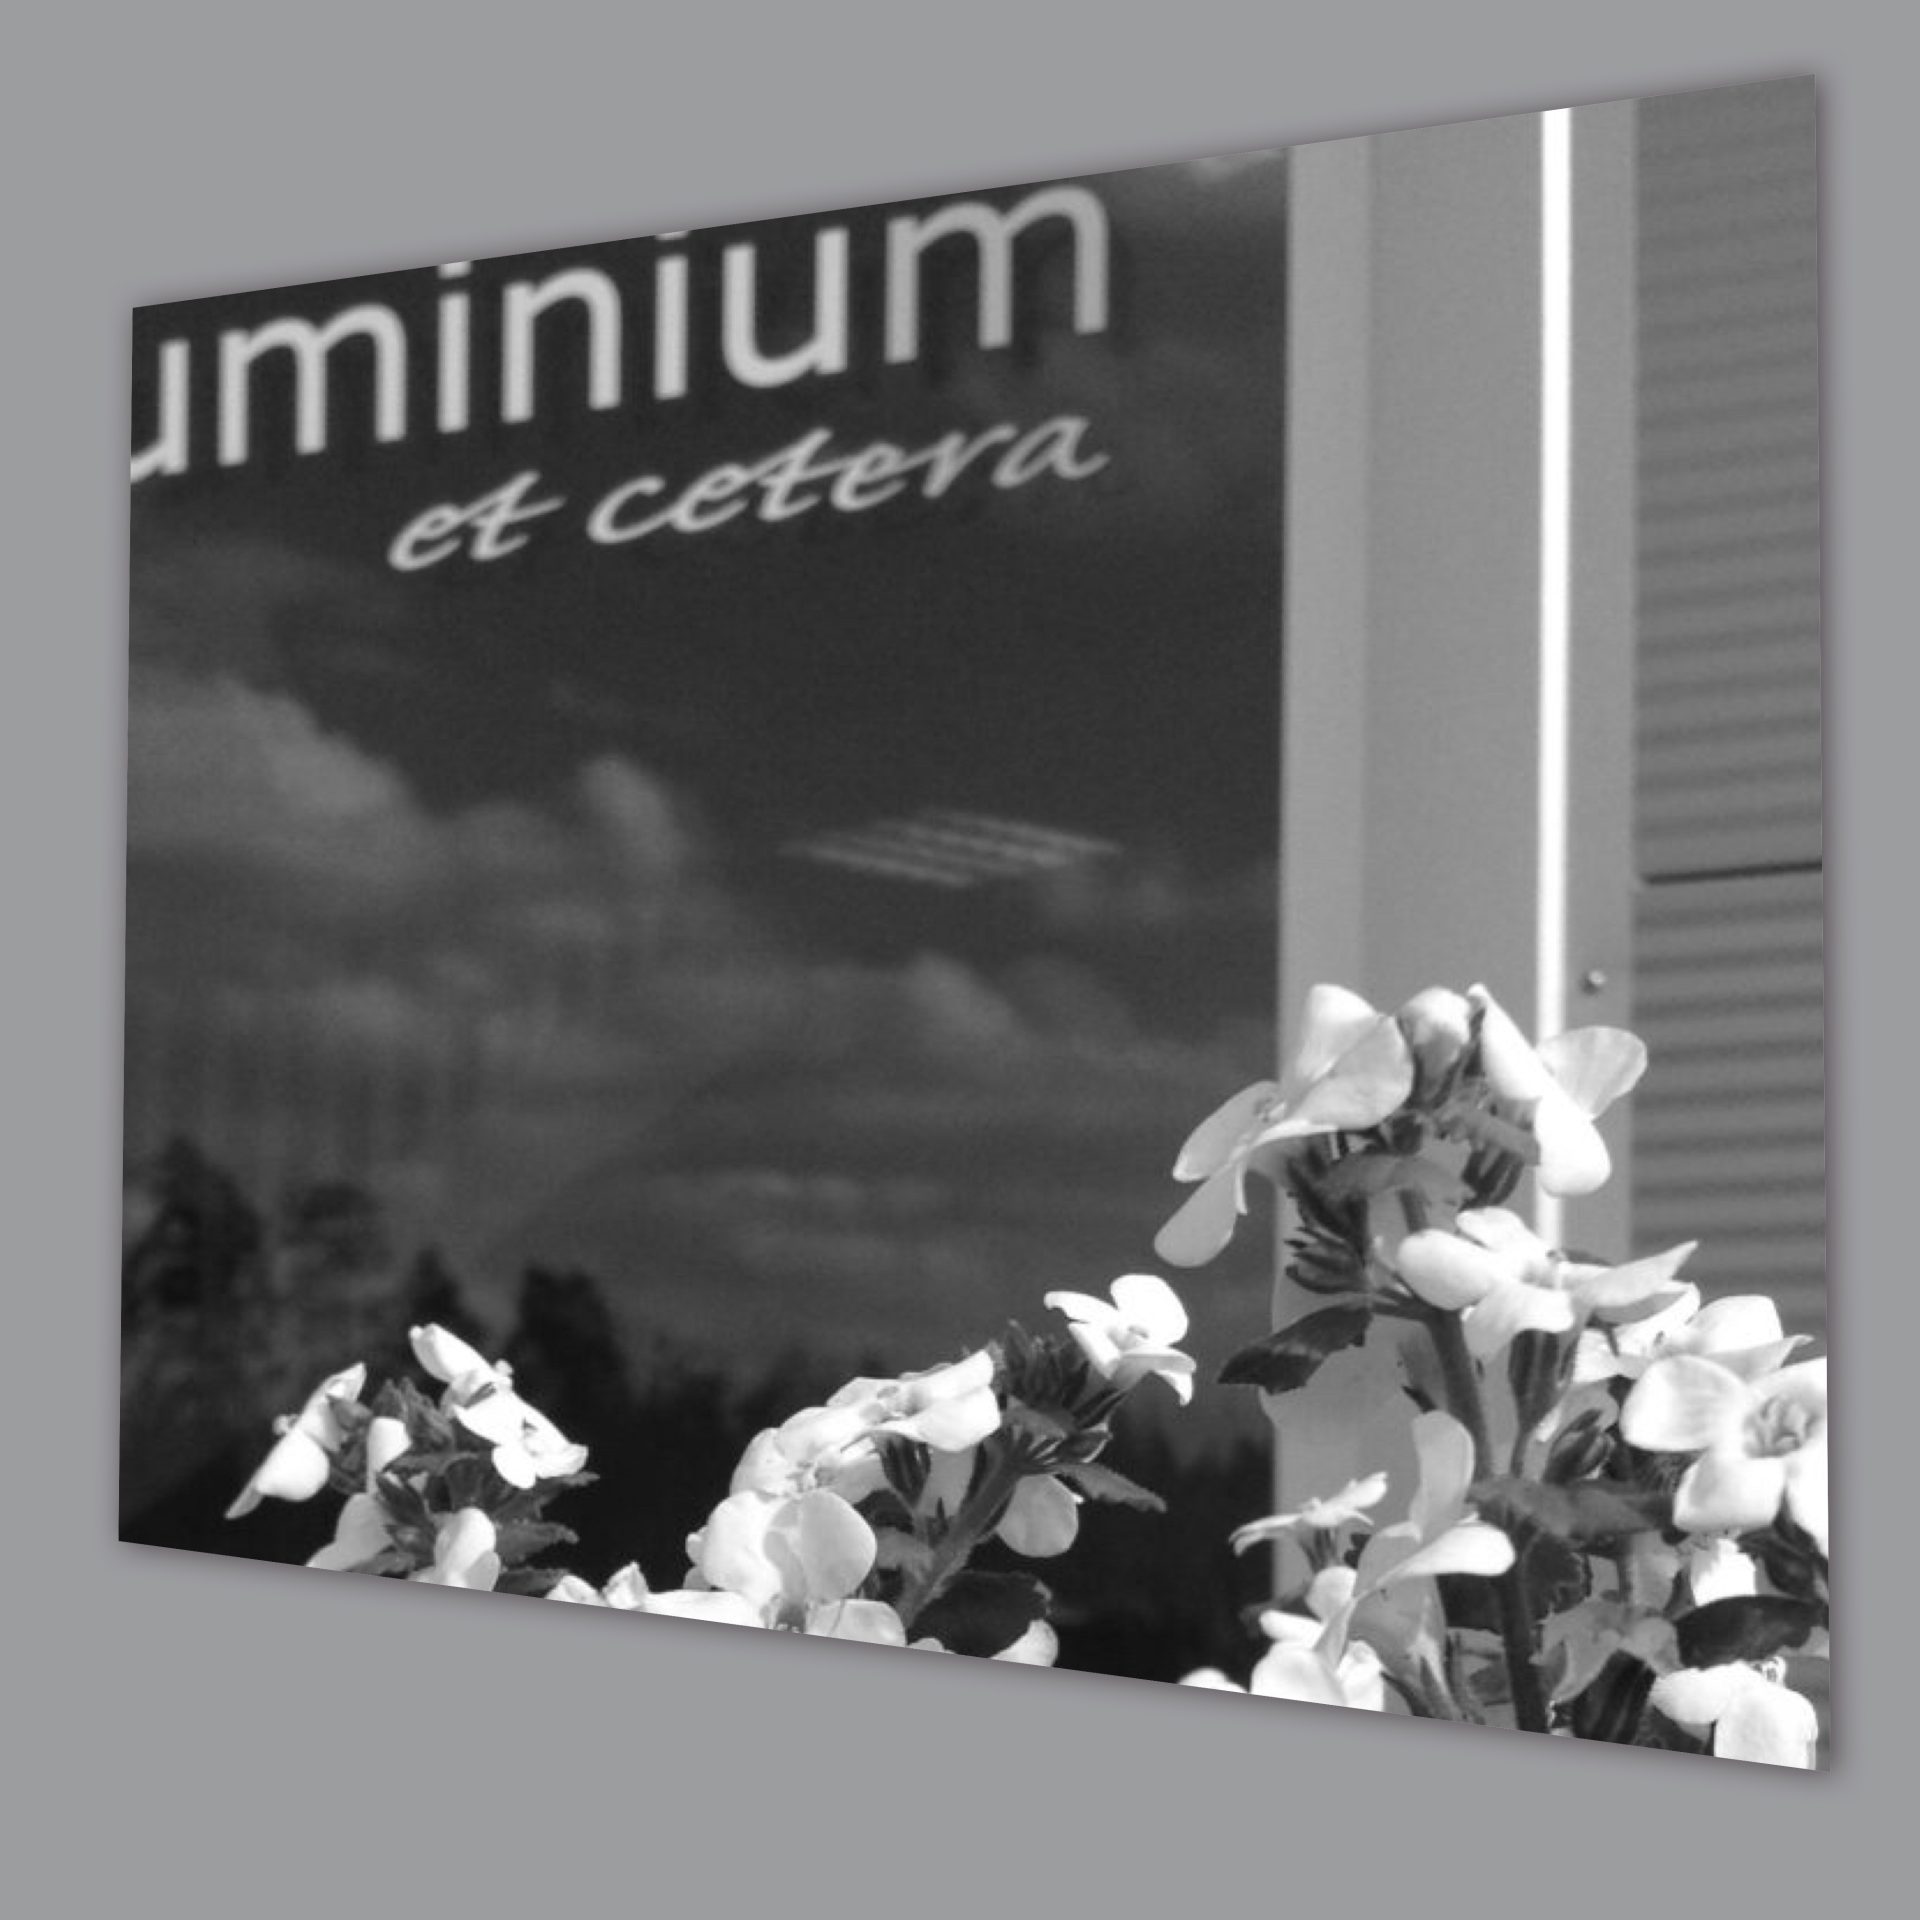 aluminium et cetera är en kompetent aluminiumleverantör